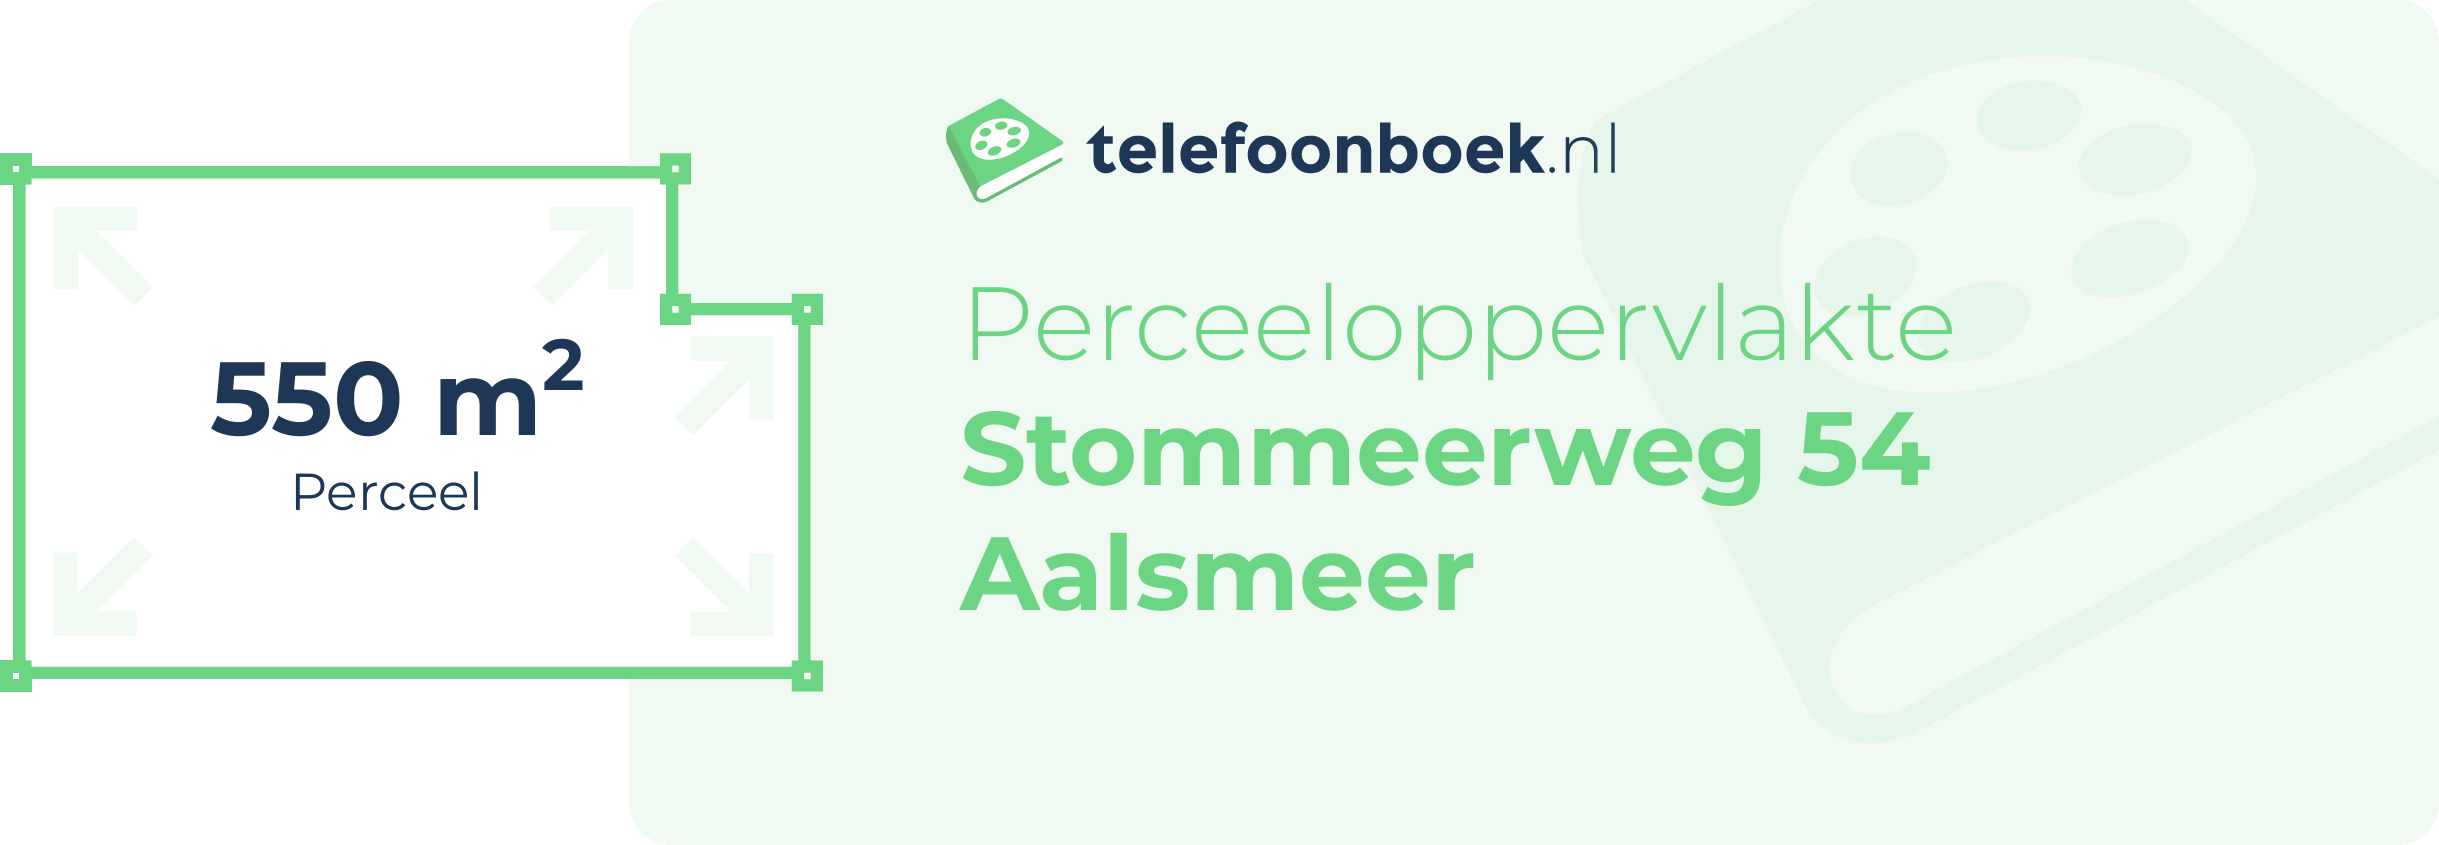 Perceeloppervlakte Stommeerweg 54 Aalsmeer